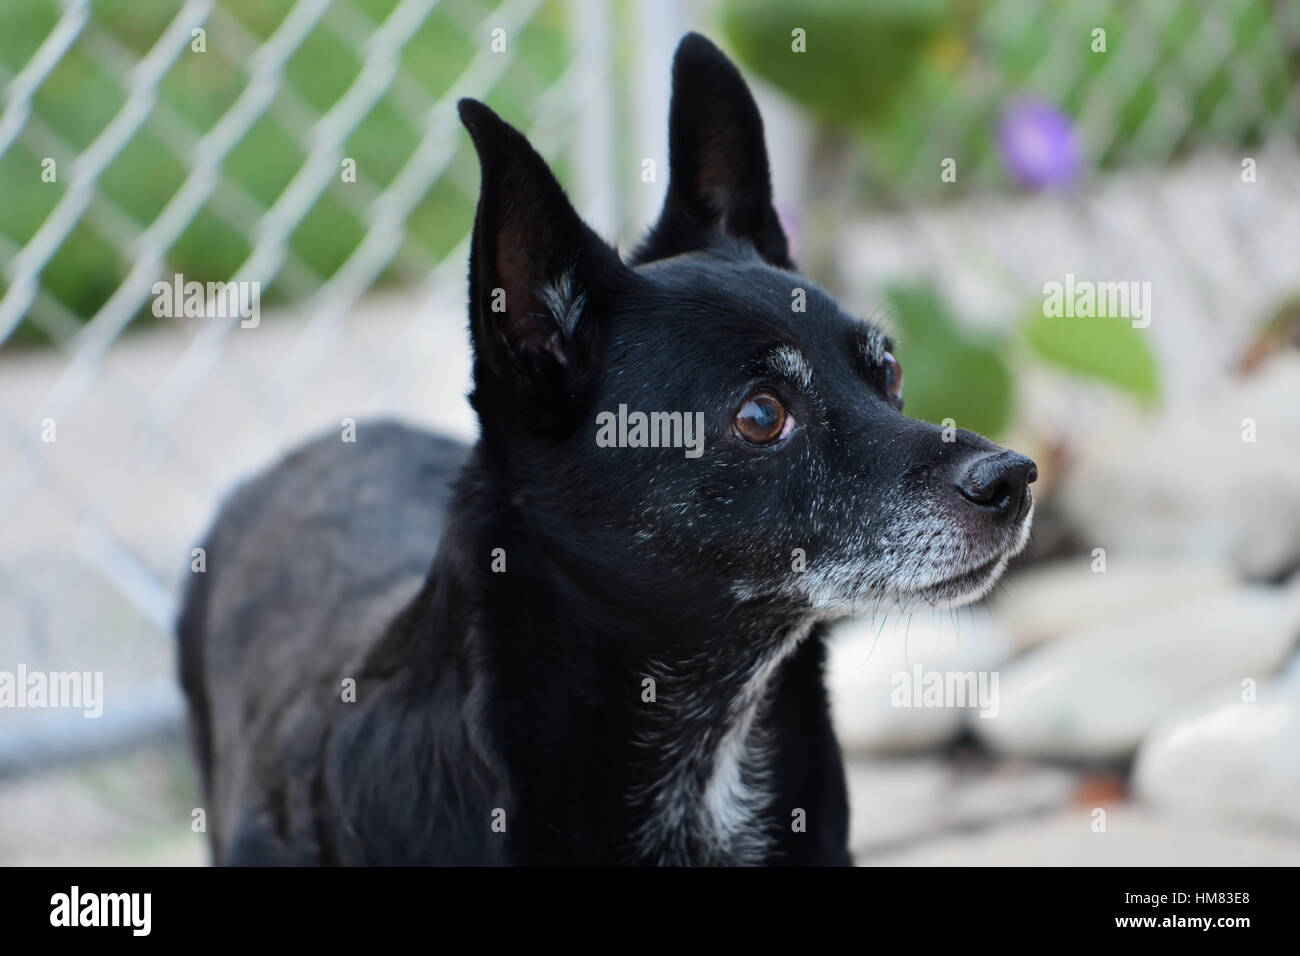 Alert Familienhund, ein Hund bereit, zu gehorchen, in einem umzäunten Hof Stockfoto